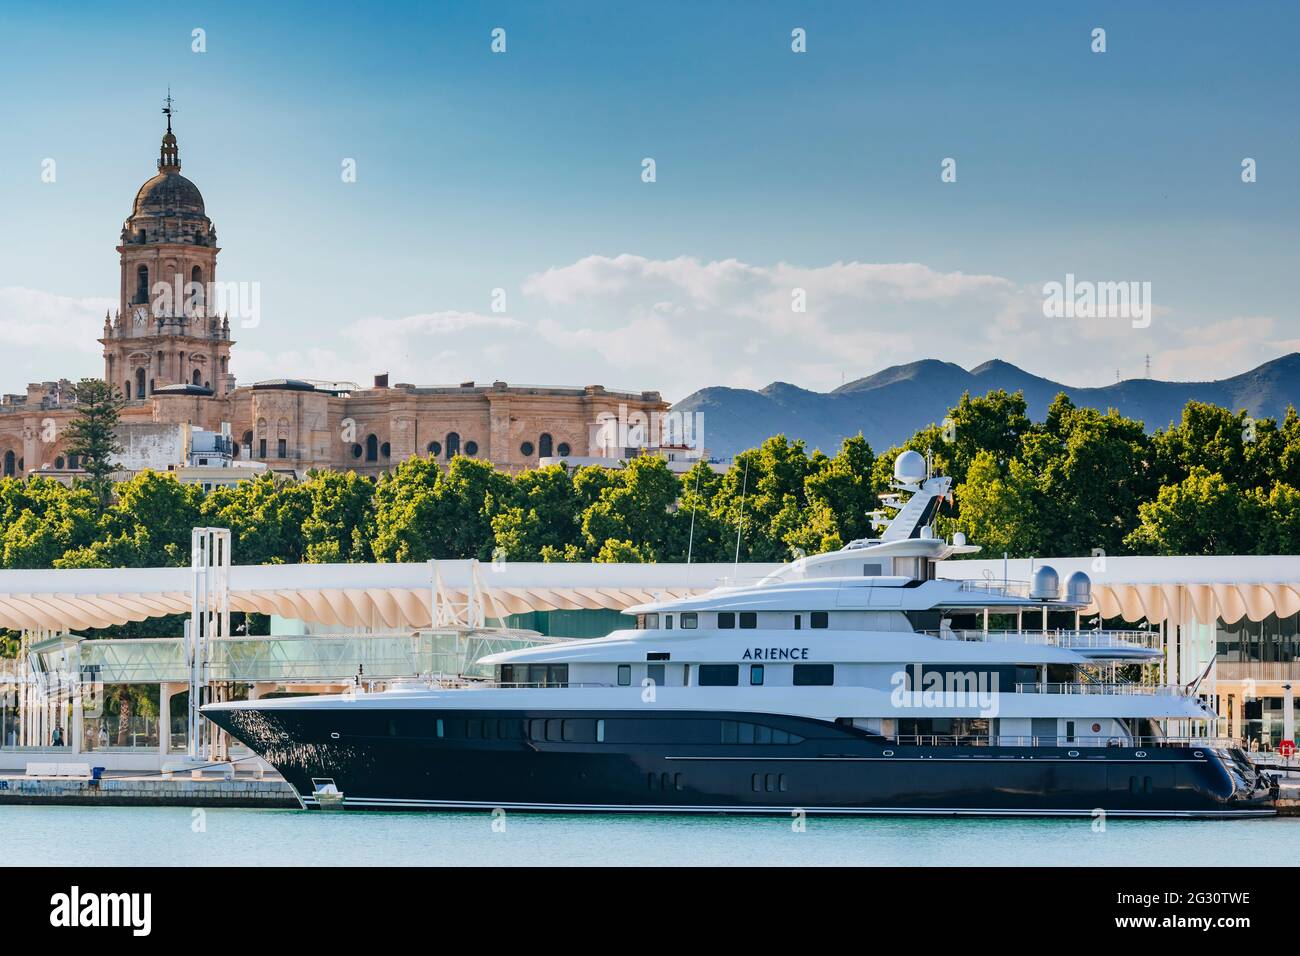 ARIENCE ist eine luxuriöse 60m Charter-Superyacht, die von Abeking & Rasmussen maßgefertigt wurde. Im Hintergrund die Kathedrale von Malaga, die sie aufsticht Stockfoto